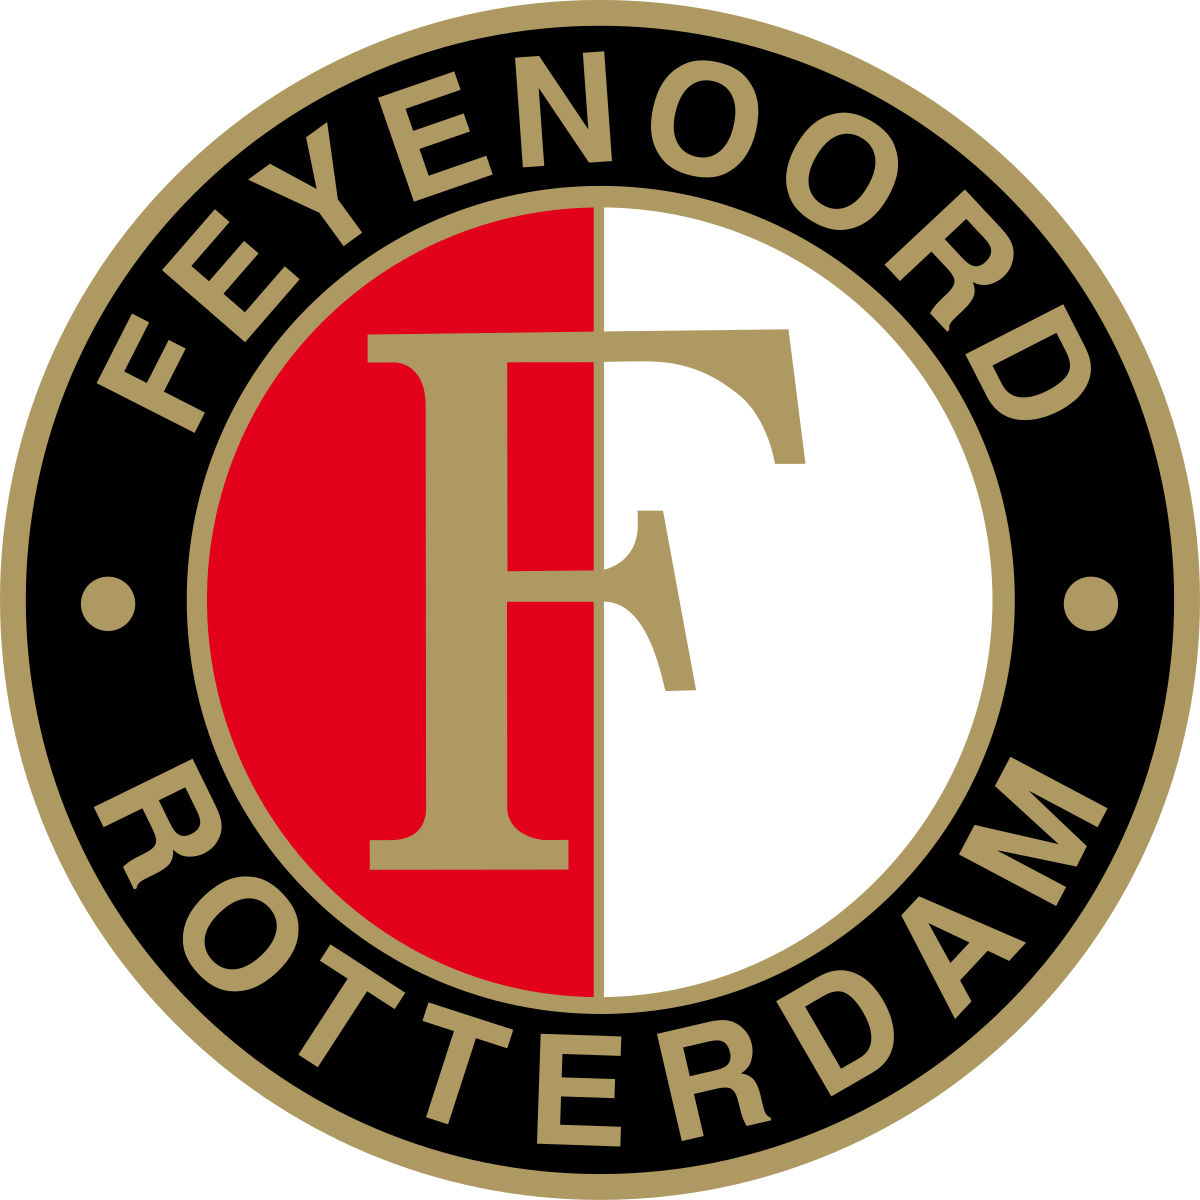 Feyenoord/